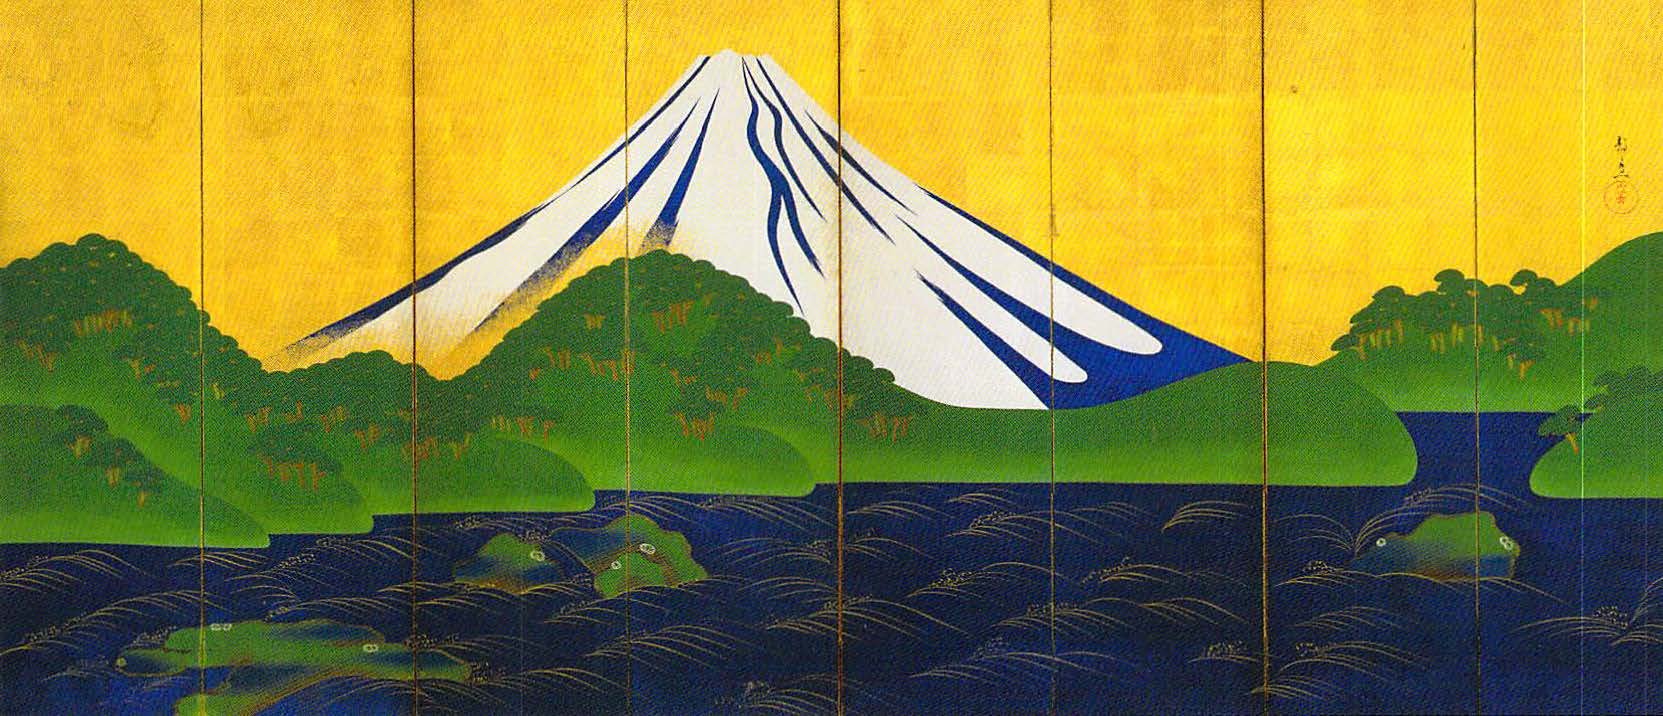 Nežinomo dailininko tapytas Fudžio kalnas. Iš J. A. Krikštopaičio archyvo